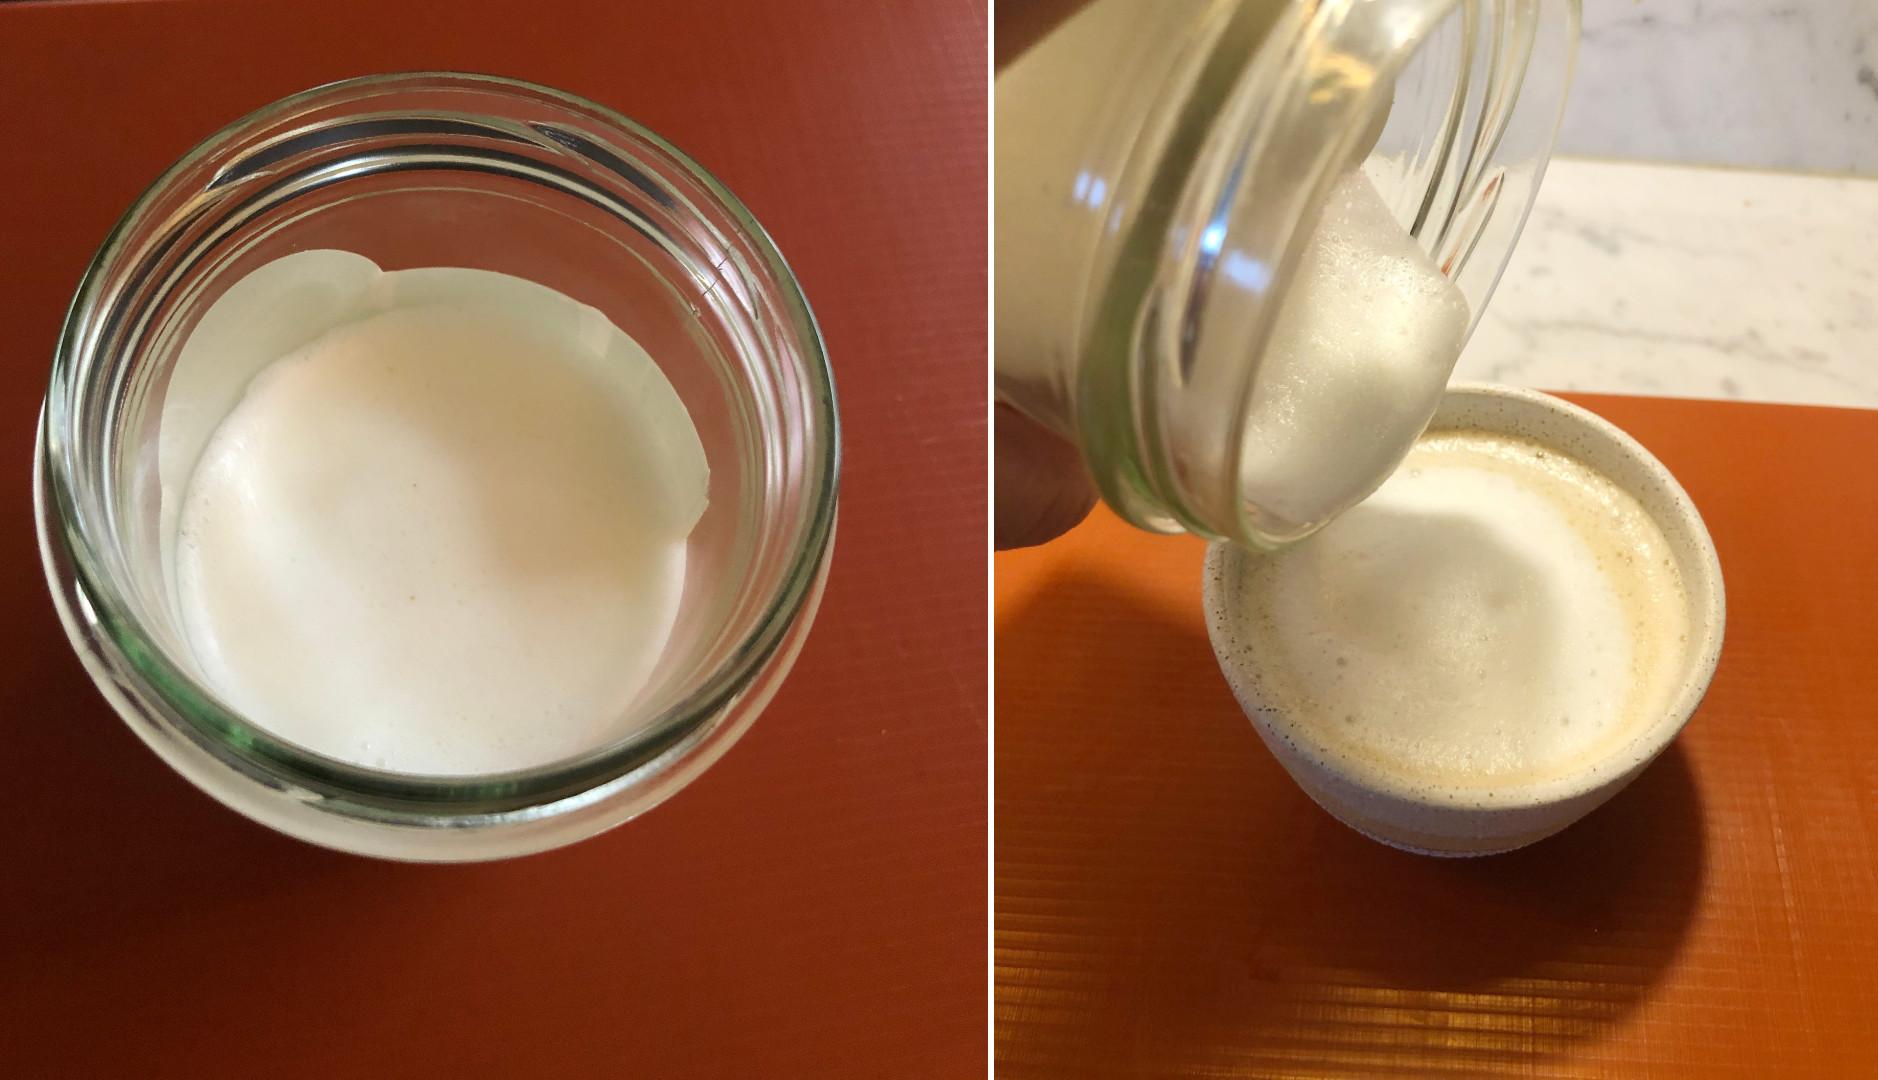 RIST LØS: Etter ha ristet syltetøyglasset med melk i 20 til 30 sekunder, og deretter varmet melken i mikroen, får du luftig hjemmesteamet melk.